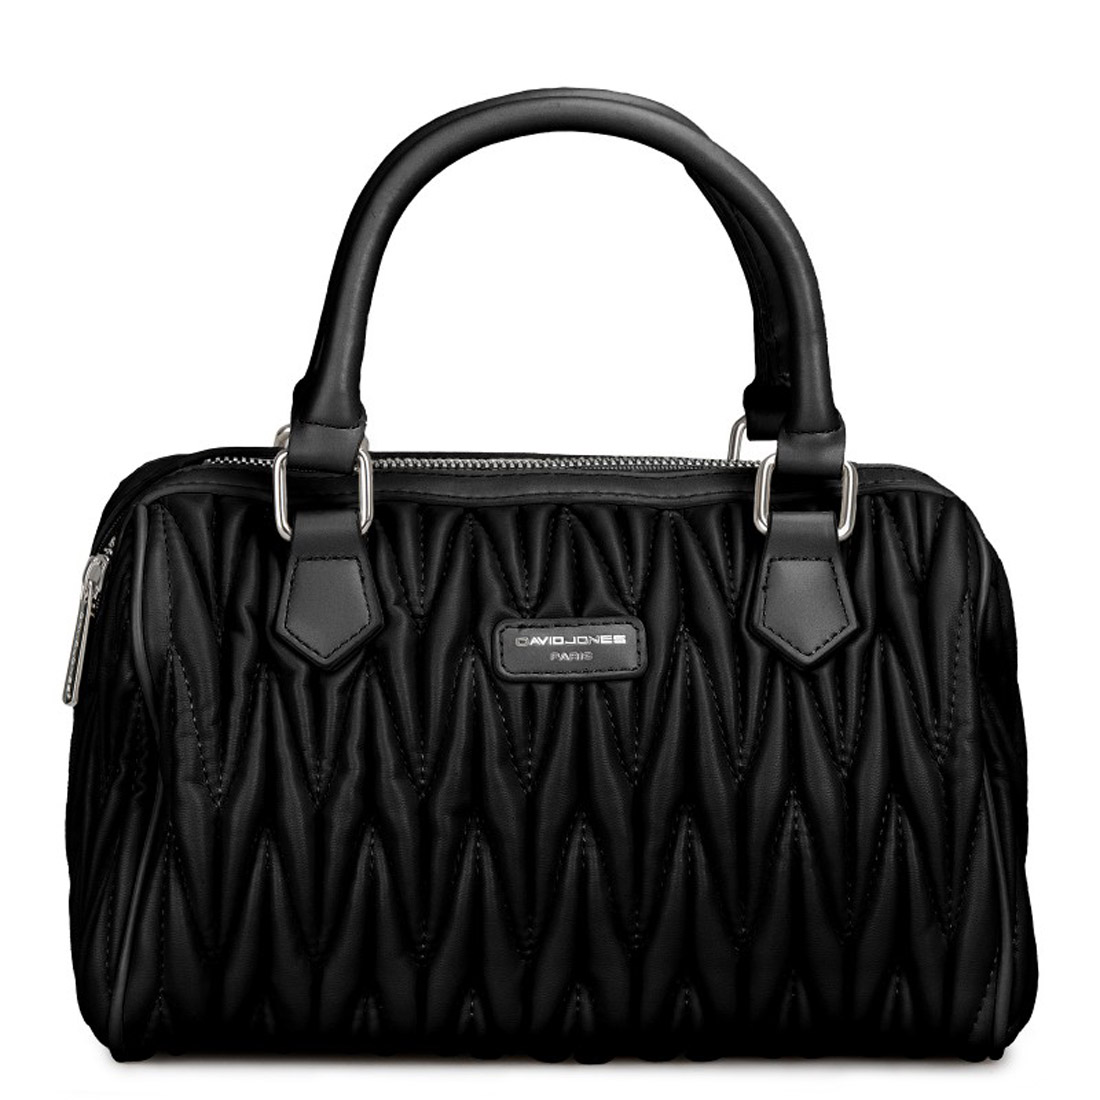 paris designer david jones bags wholesale > David Jones Bags > Mezon  Handbags